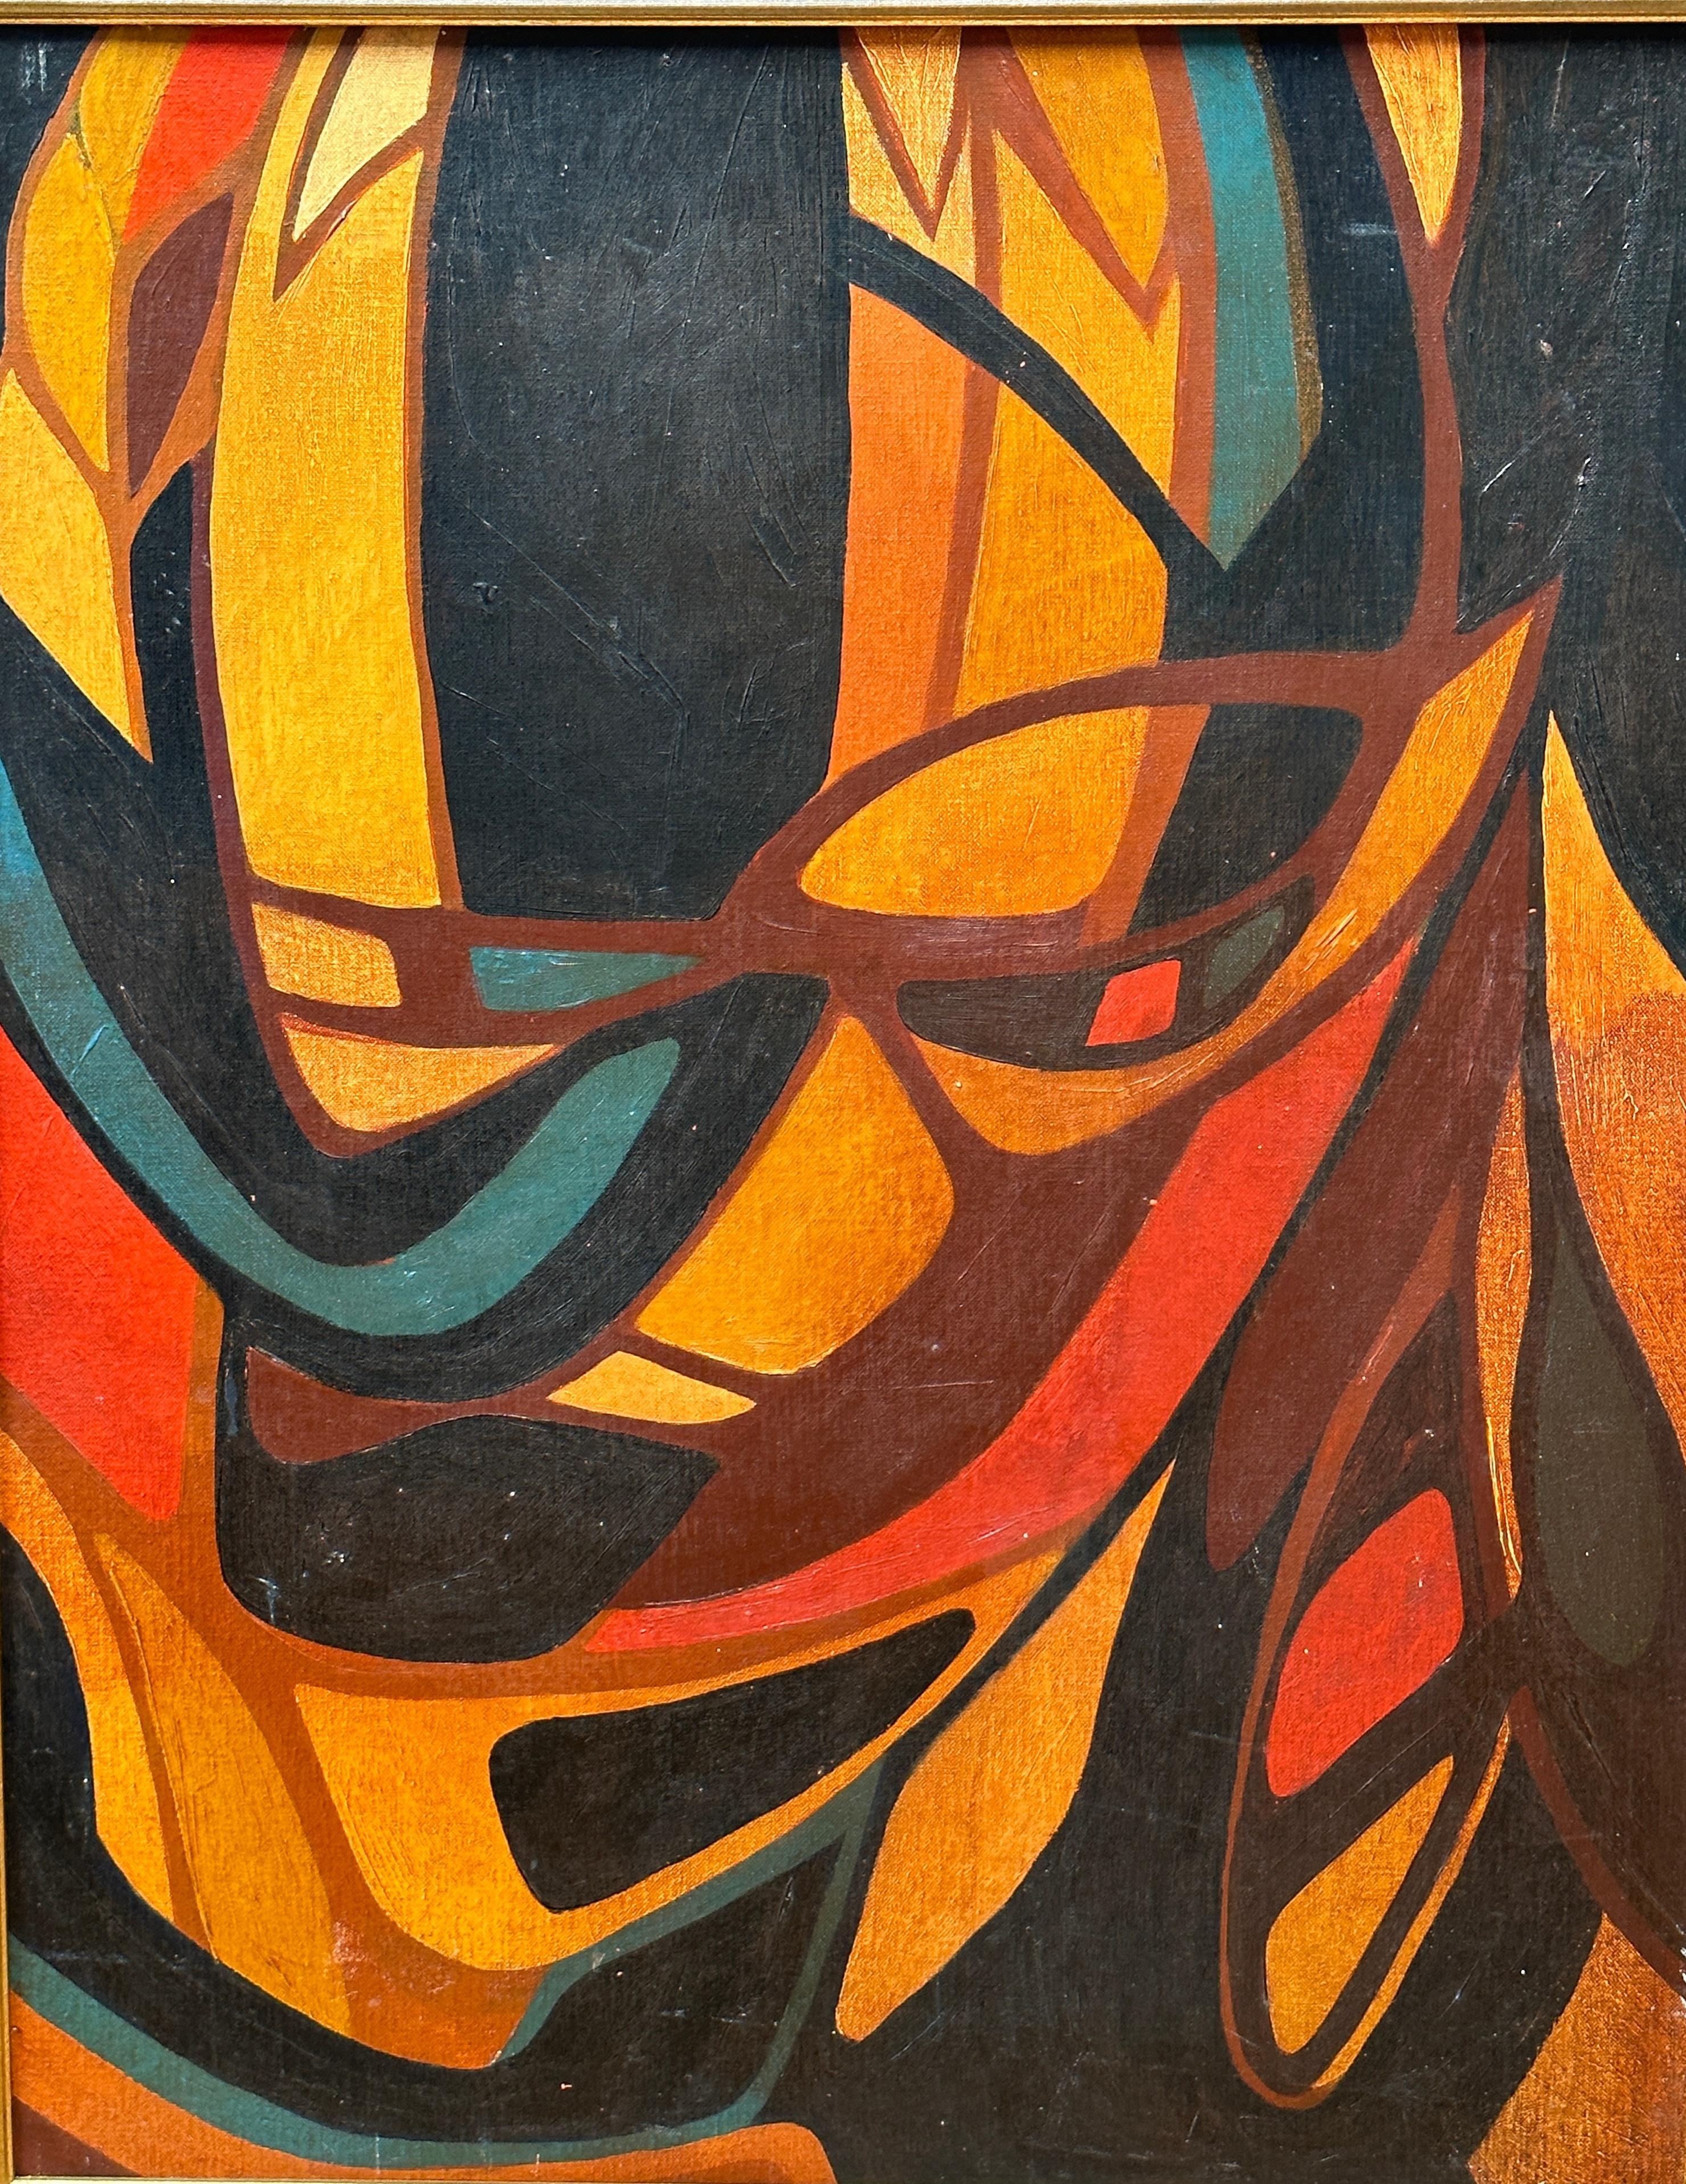 Cette peinture acrylique de Brian Ackerman invite le spectateur à pénétrer dans un univers kaléidoscopique où les éléments du feu dansent et se tissent en une tapisserie abstraite. Brian Ackerman a signé au dos et Grumbacher a certifié la qualité de